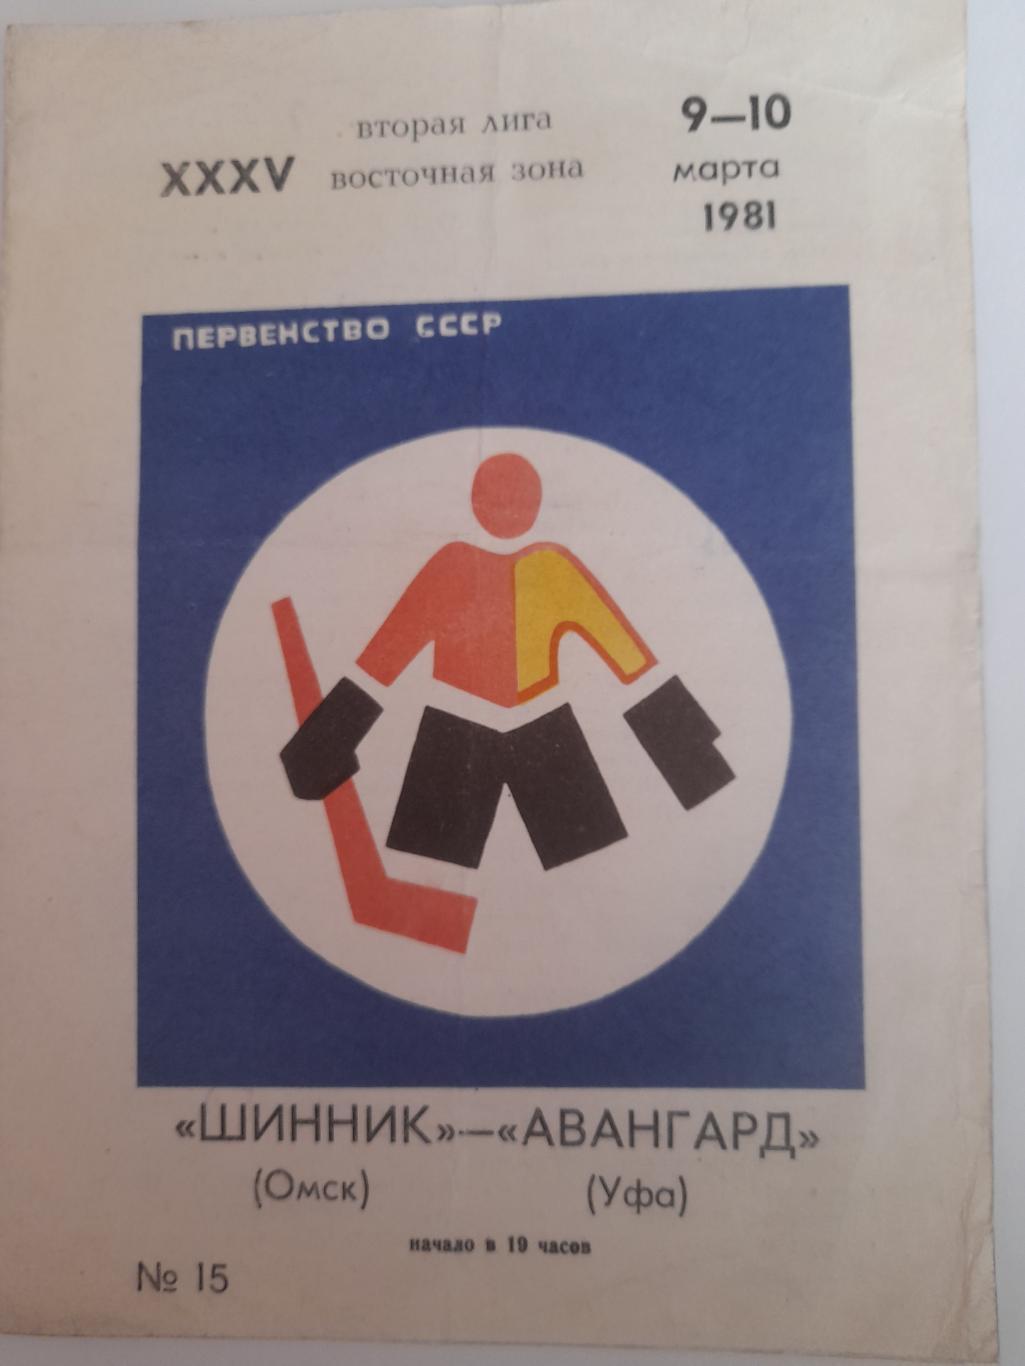 Шинник Омск - Авангард Уфа 1981